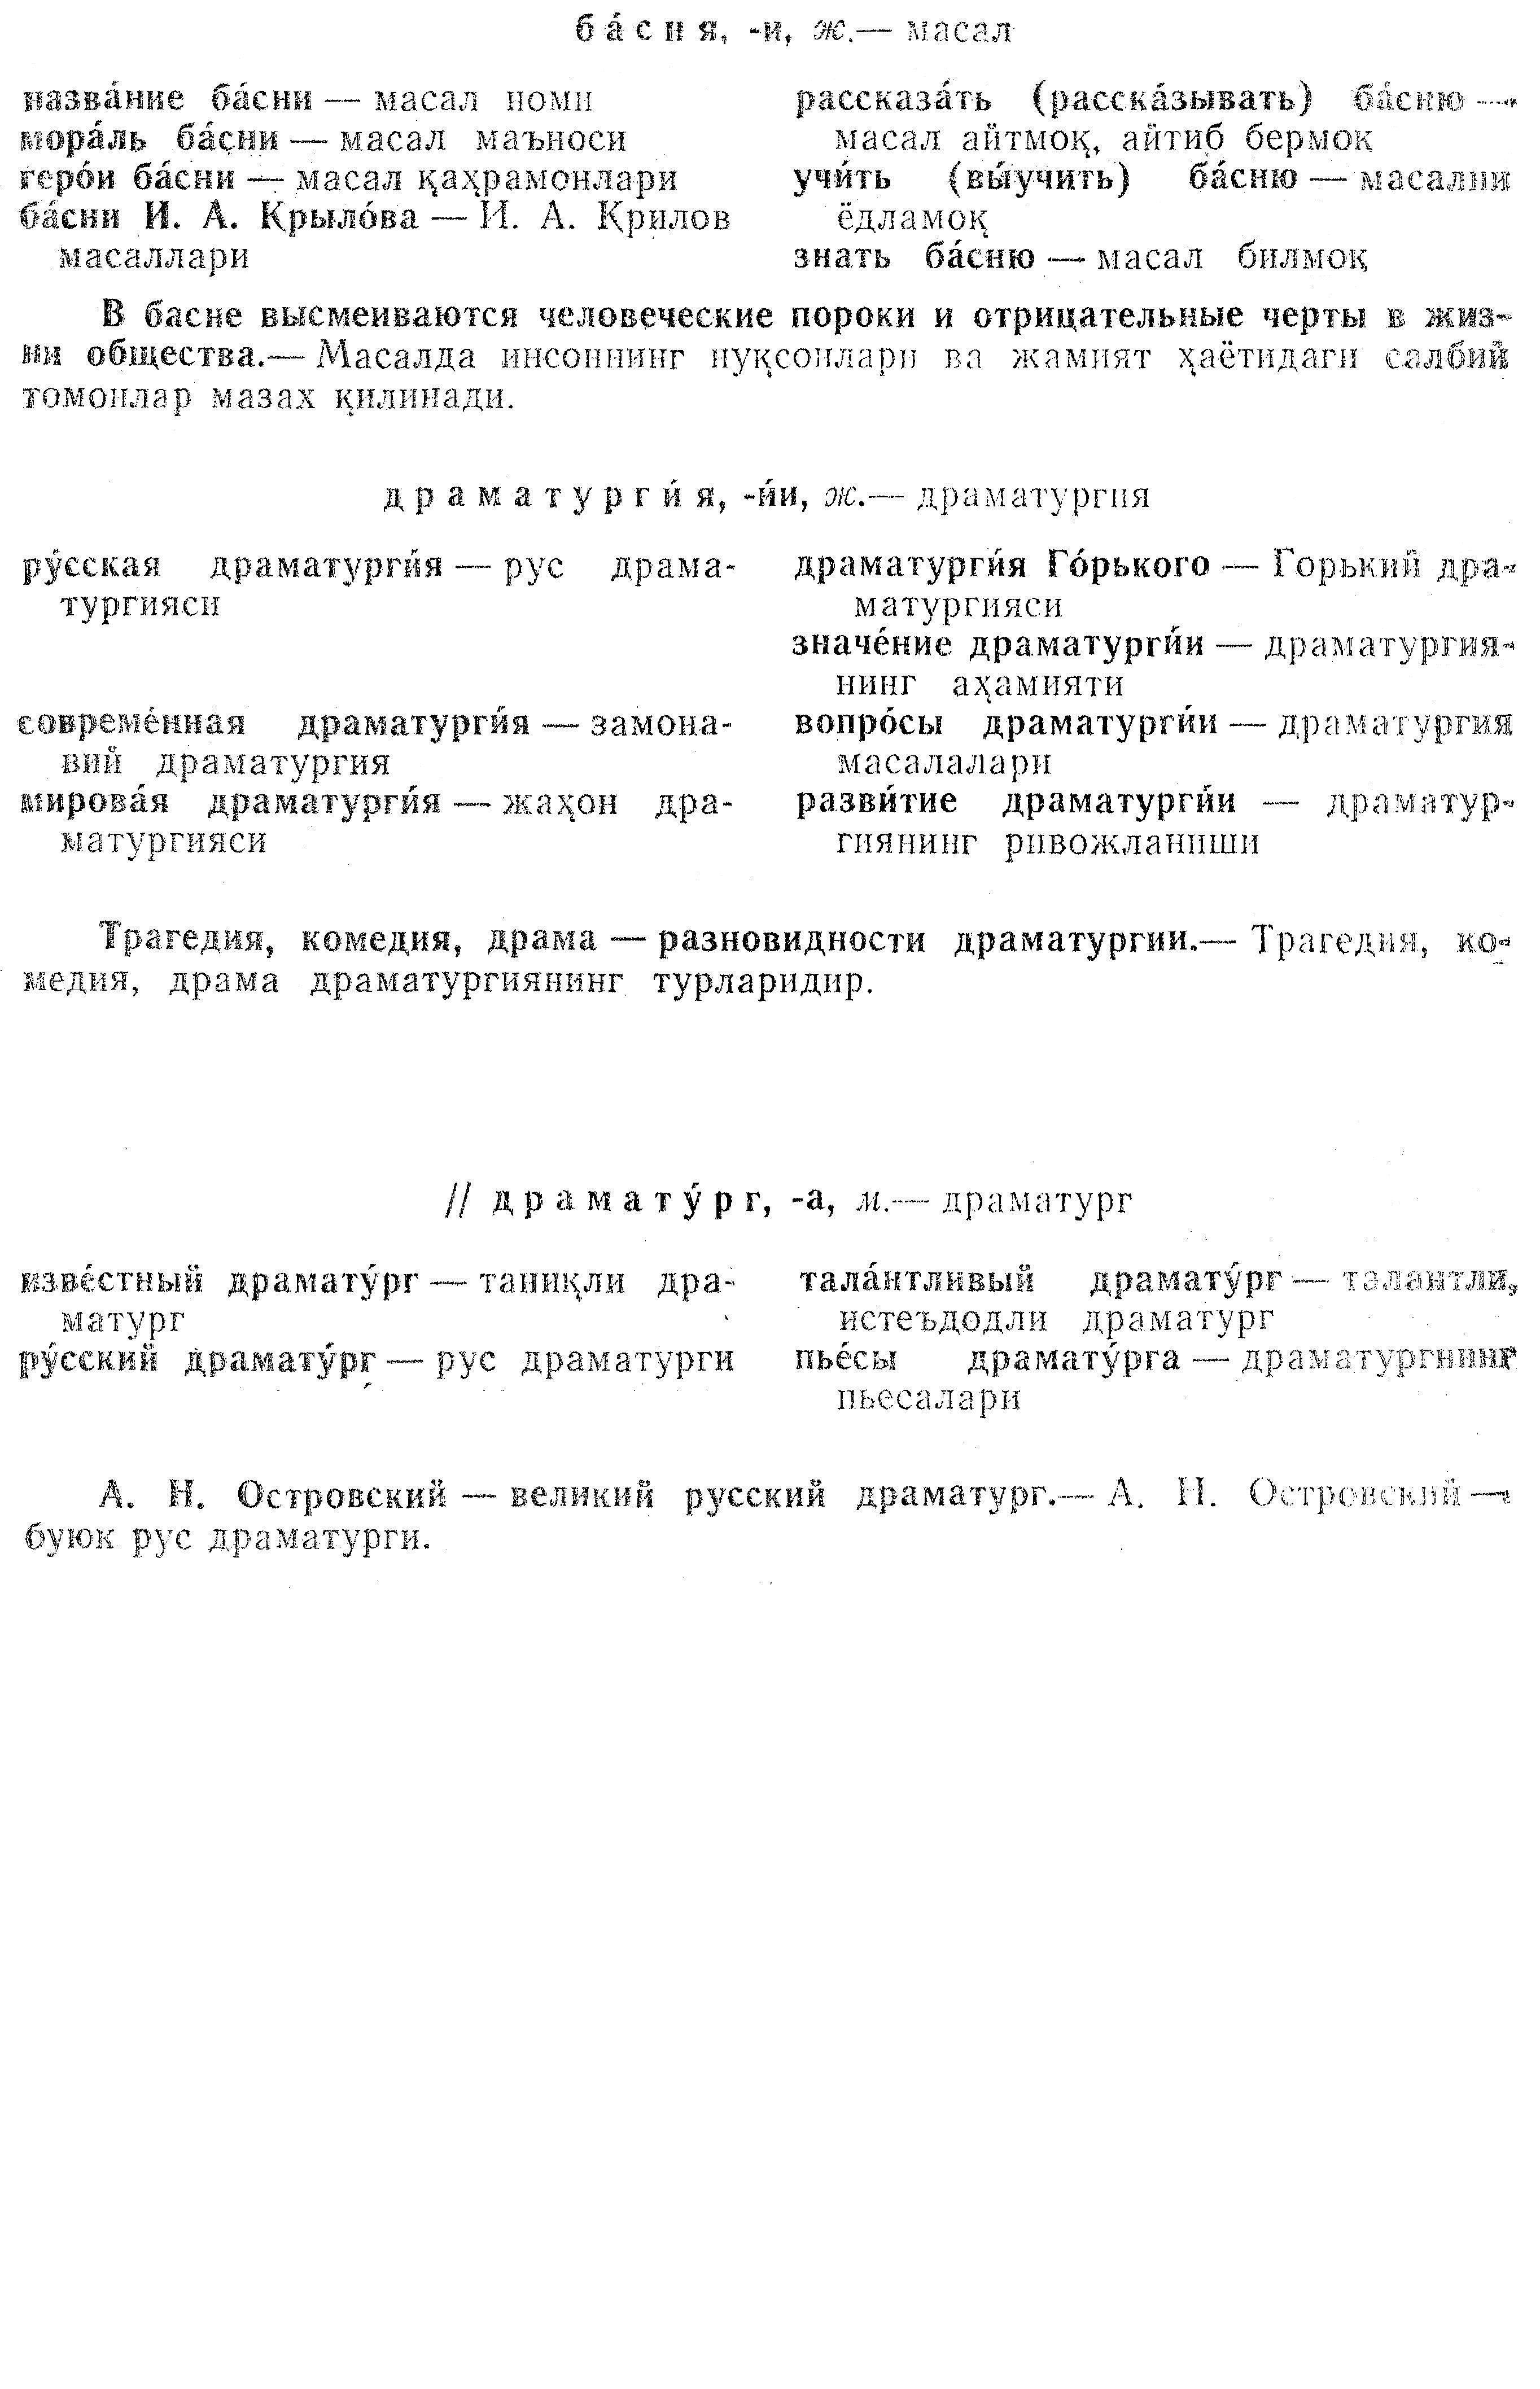 Продолжение статьи Словари для работы на уроках русского языка и литературы